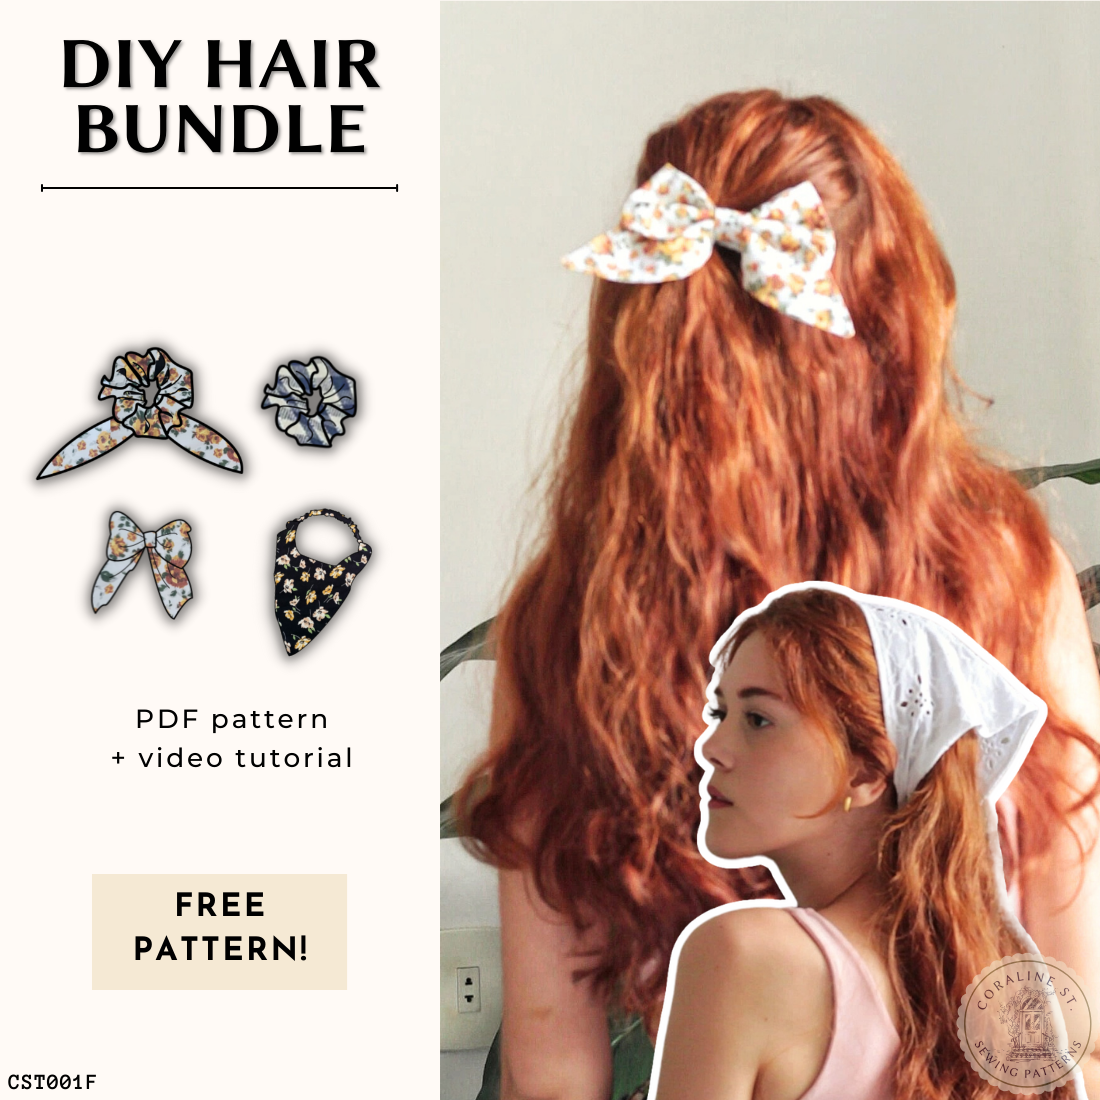 Hair Bundle DIY FREE PDF Sewing Pattern